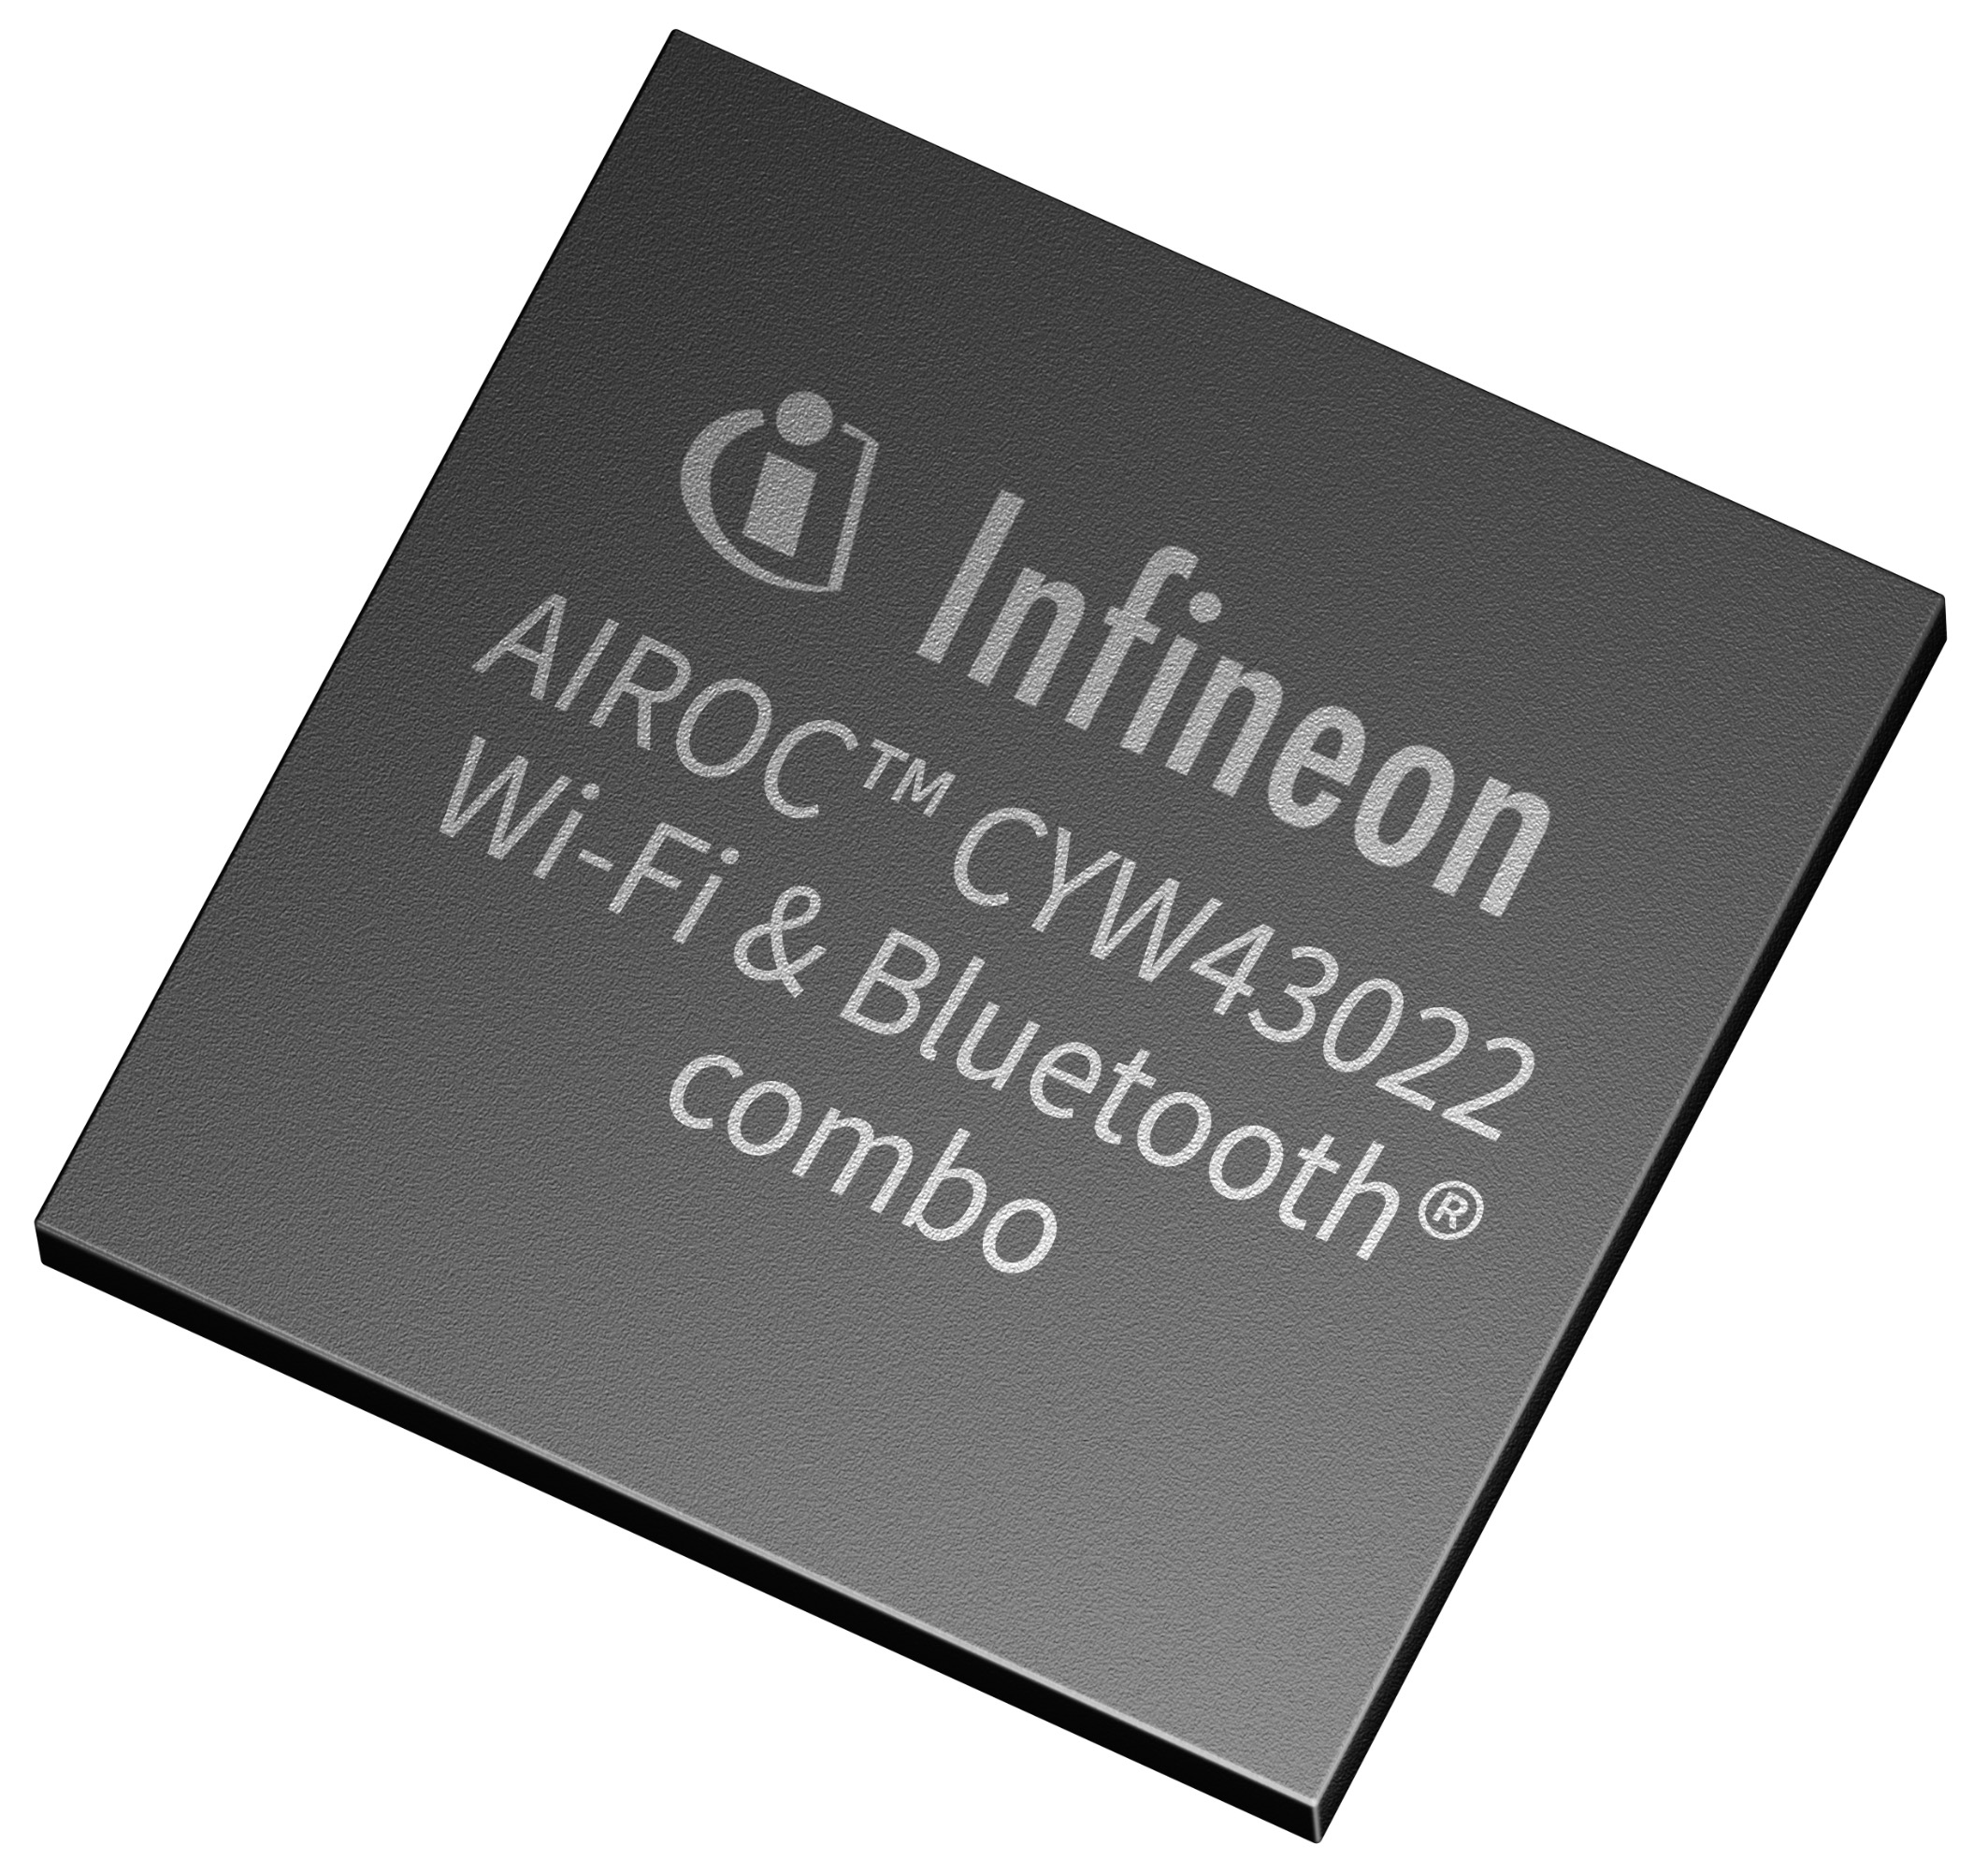 英飞凌科技AIROC™ CYW43022 超低功耗双频段 Wi-Fi 5 和蓝牙® 二合一产品.jpg